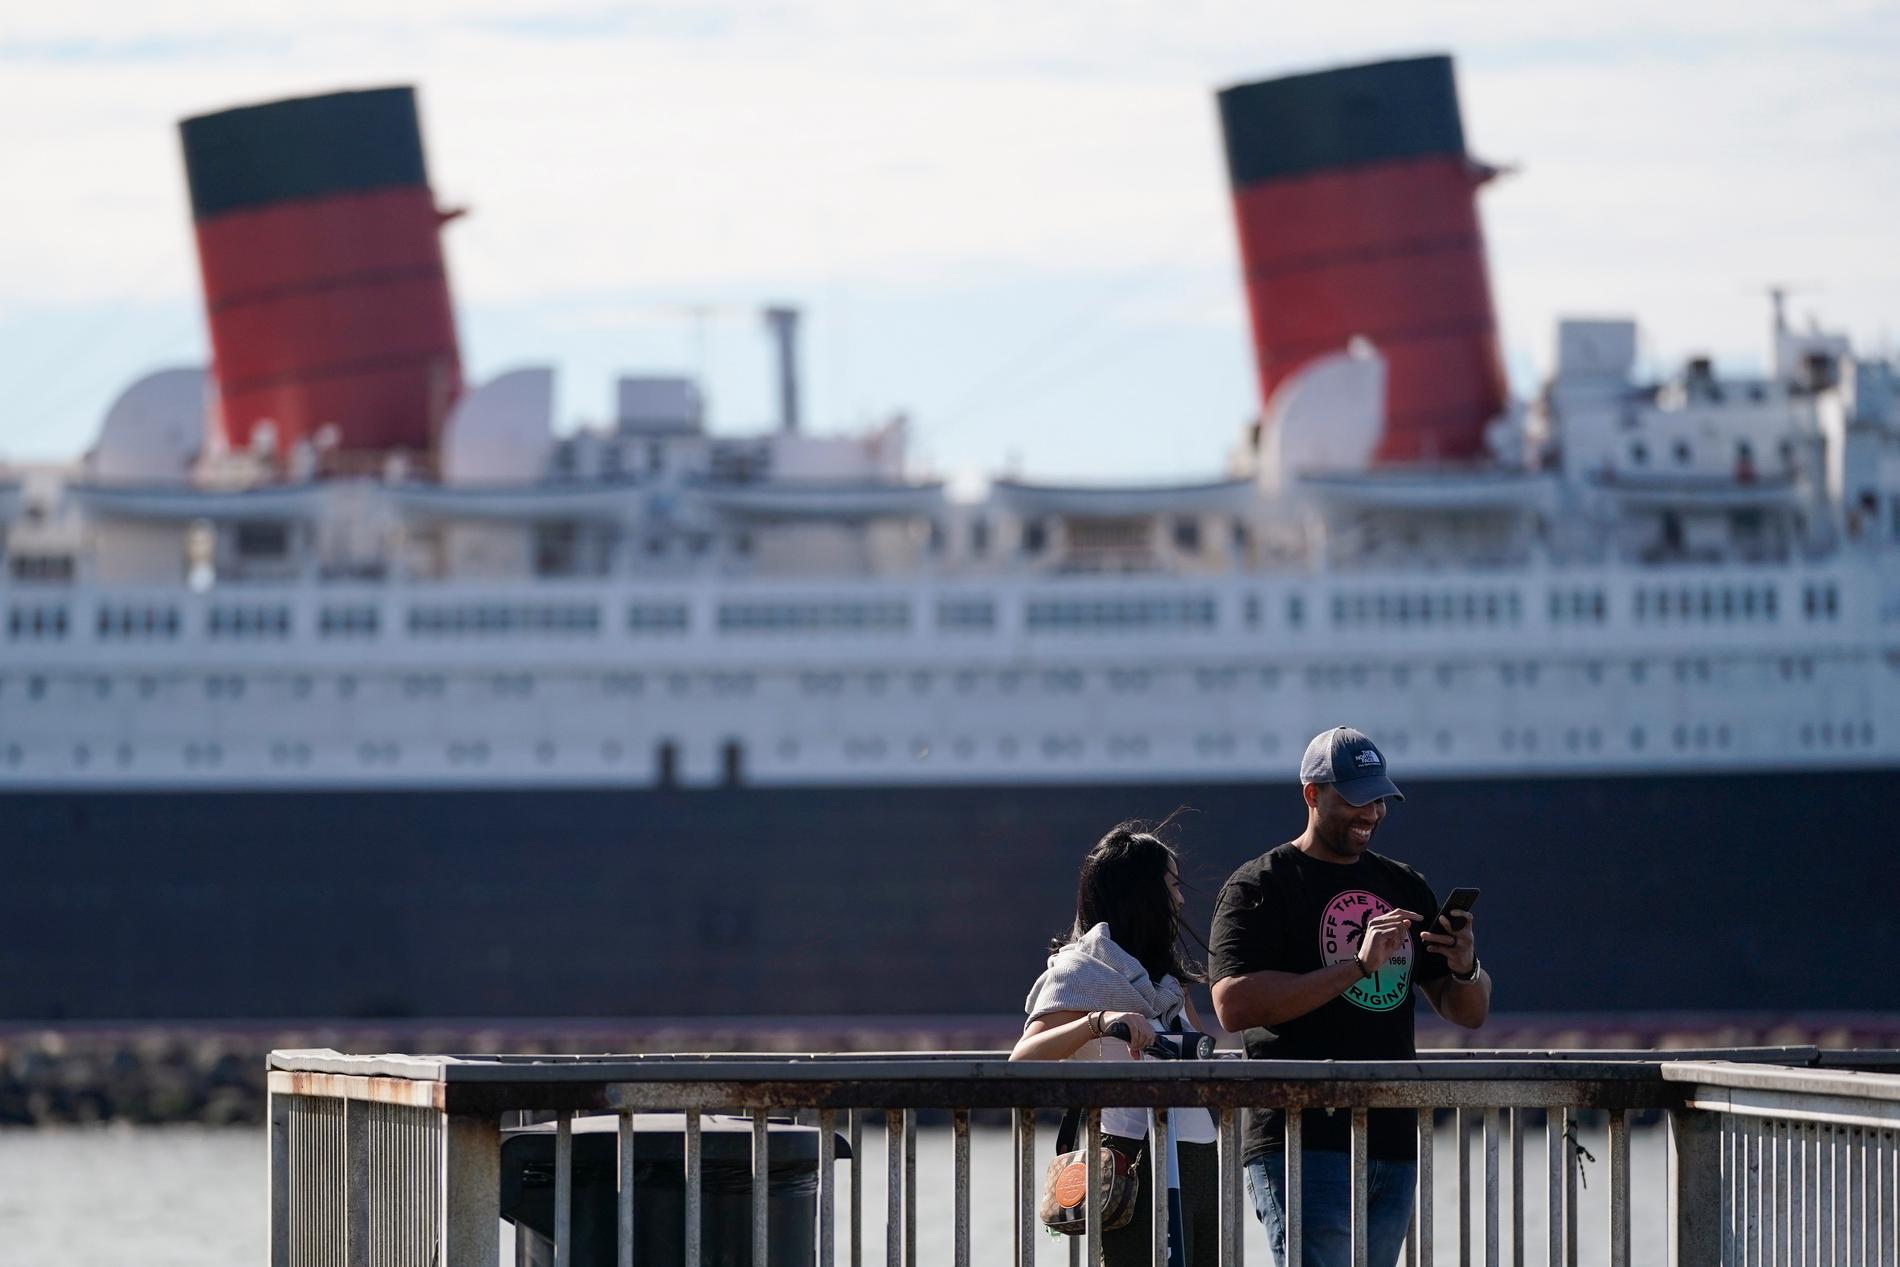 Queen Mary, ett av världens mest kända fartyg, stänger för turister på grund av reparationer. Sedan 1967 ligger hon vid kaj i hamnen i Long Beach i Kalifornien.